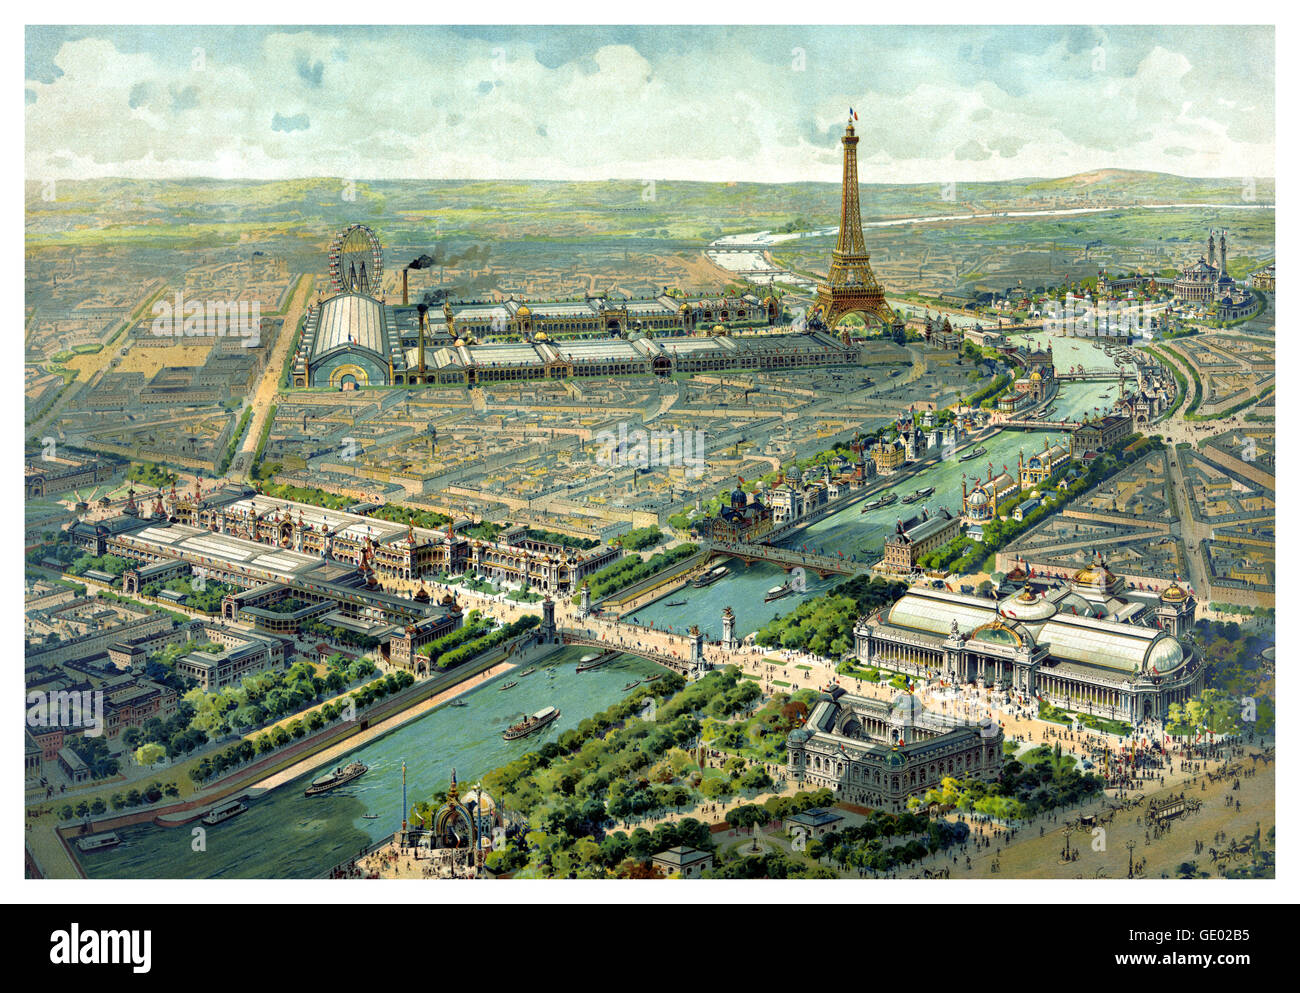 EXPOSITION DE PARIS 1900 vintage a10 historique illustration élevée de l'antenne sur Paris et la Tour Eiffel et de la Seine au cours de l'exposition 1900 Paris France Banque D'Images